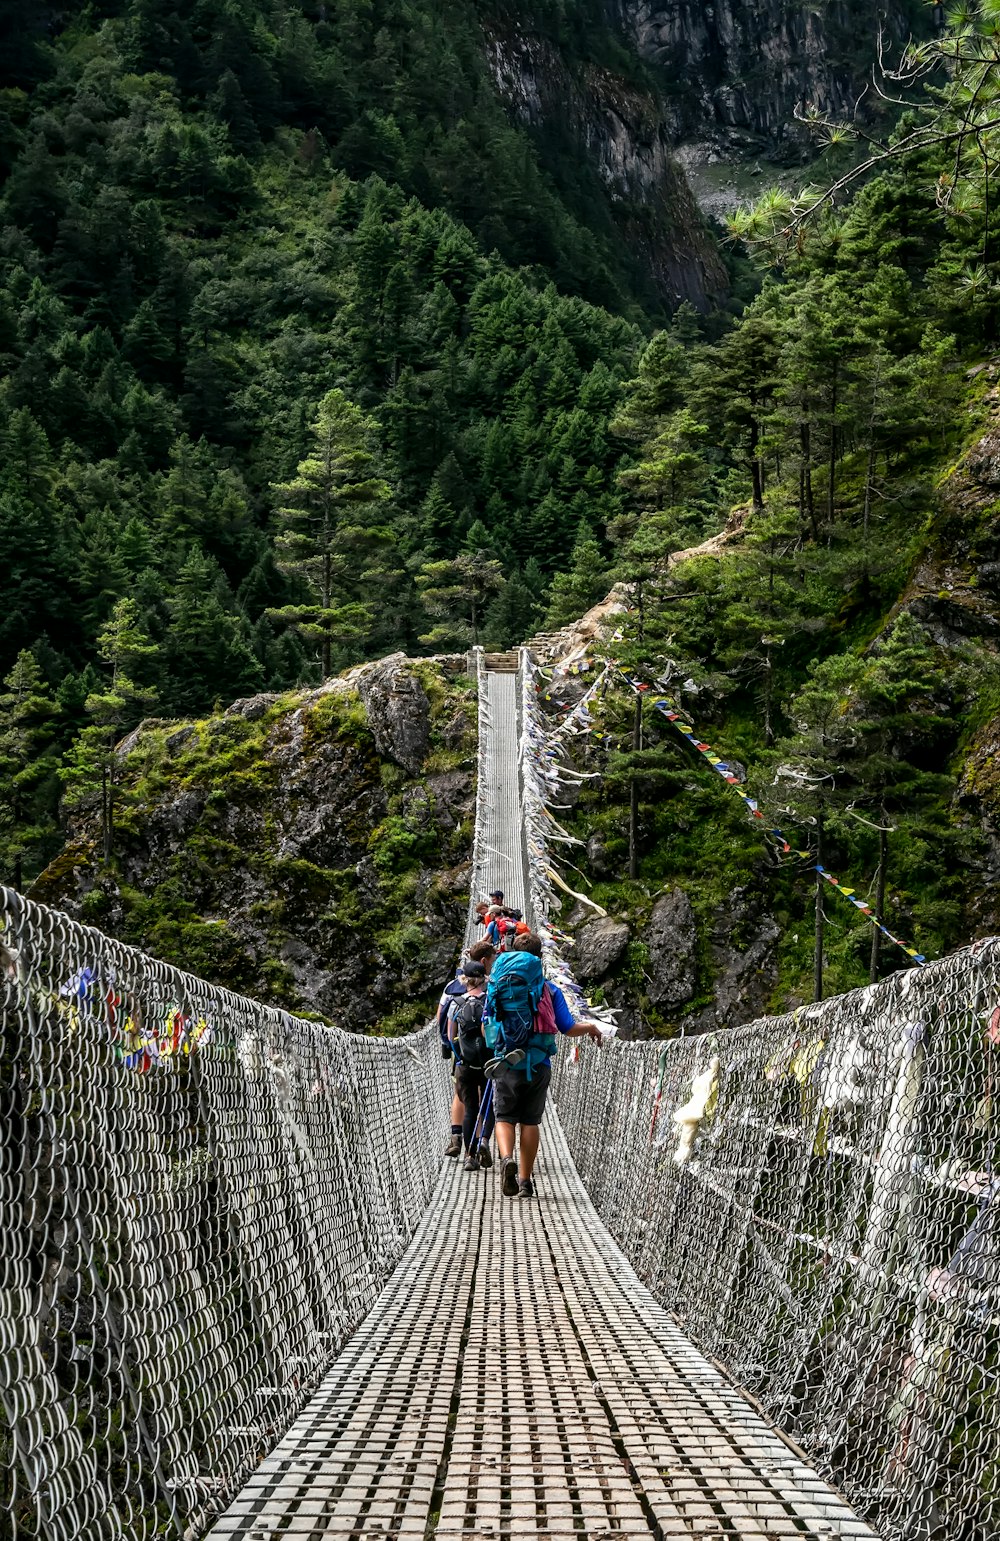 昼間、灰色のロープ橋の上を歩く人々